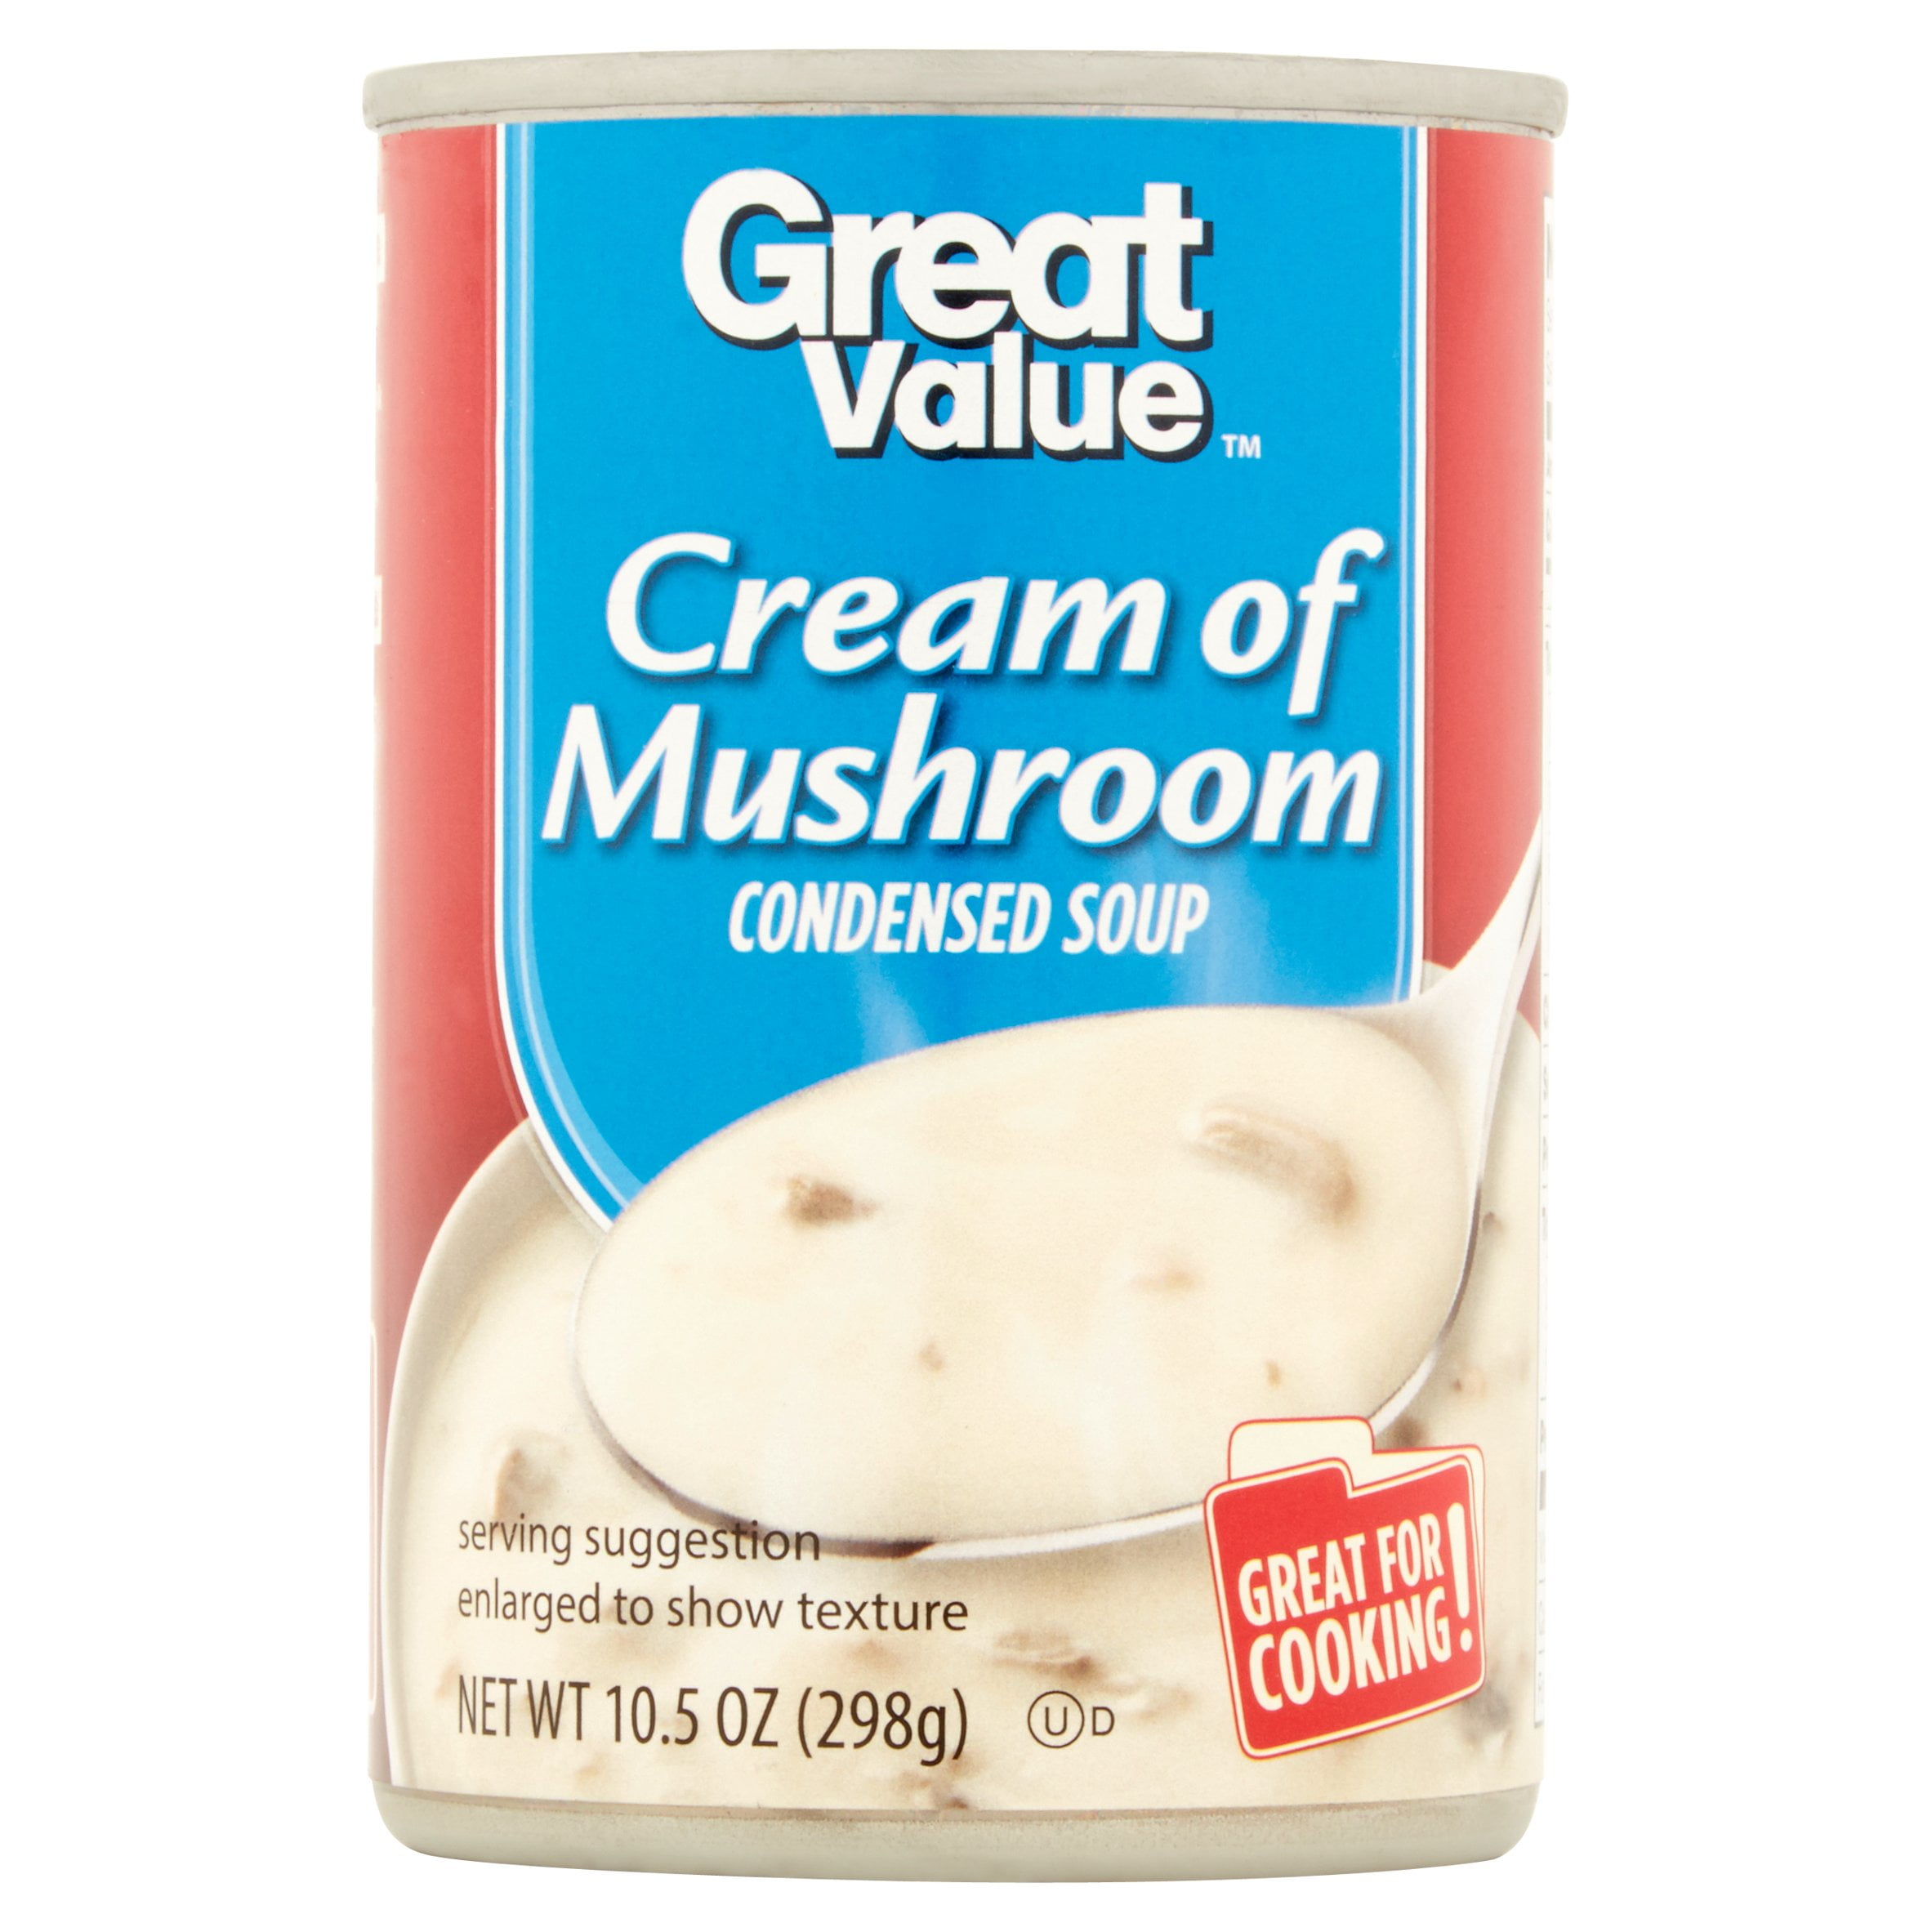 Great Value Cream of Mushroom Condensed Soup, 10.5 oz